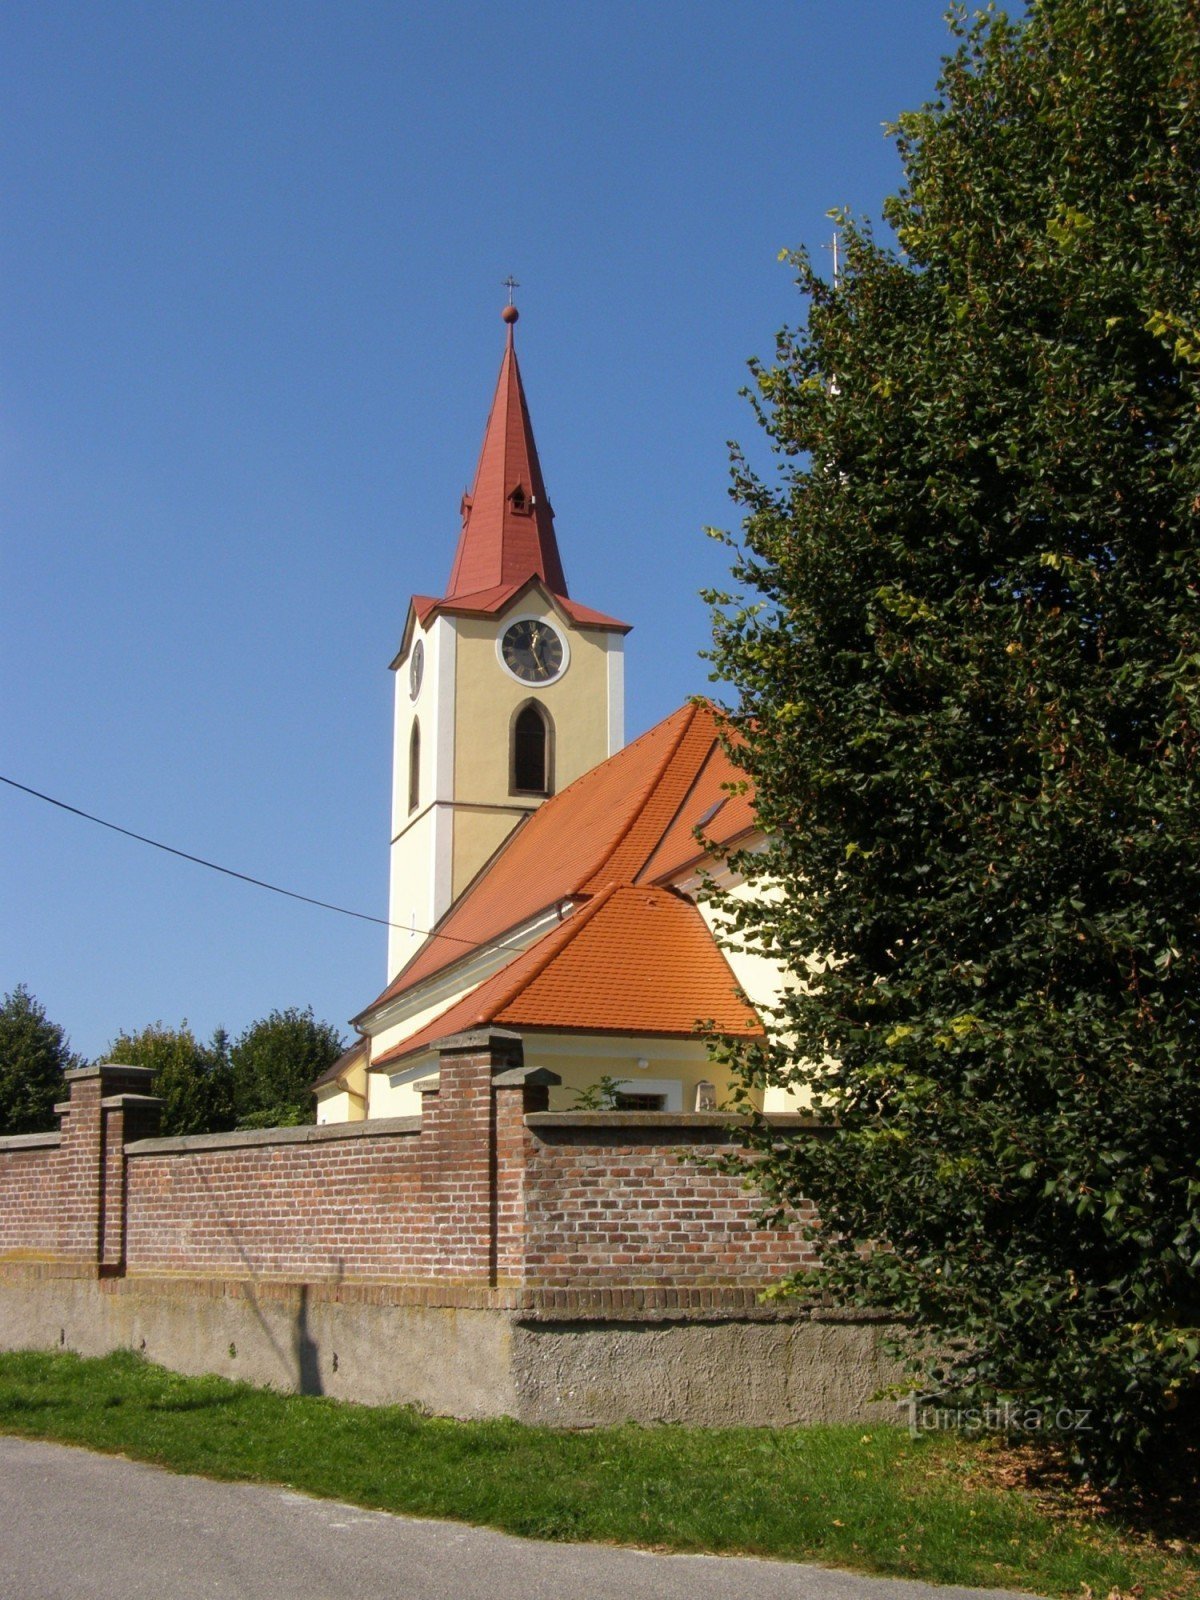 Jasenná - St. Georges kyrka